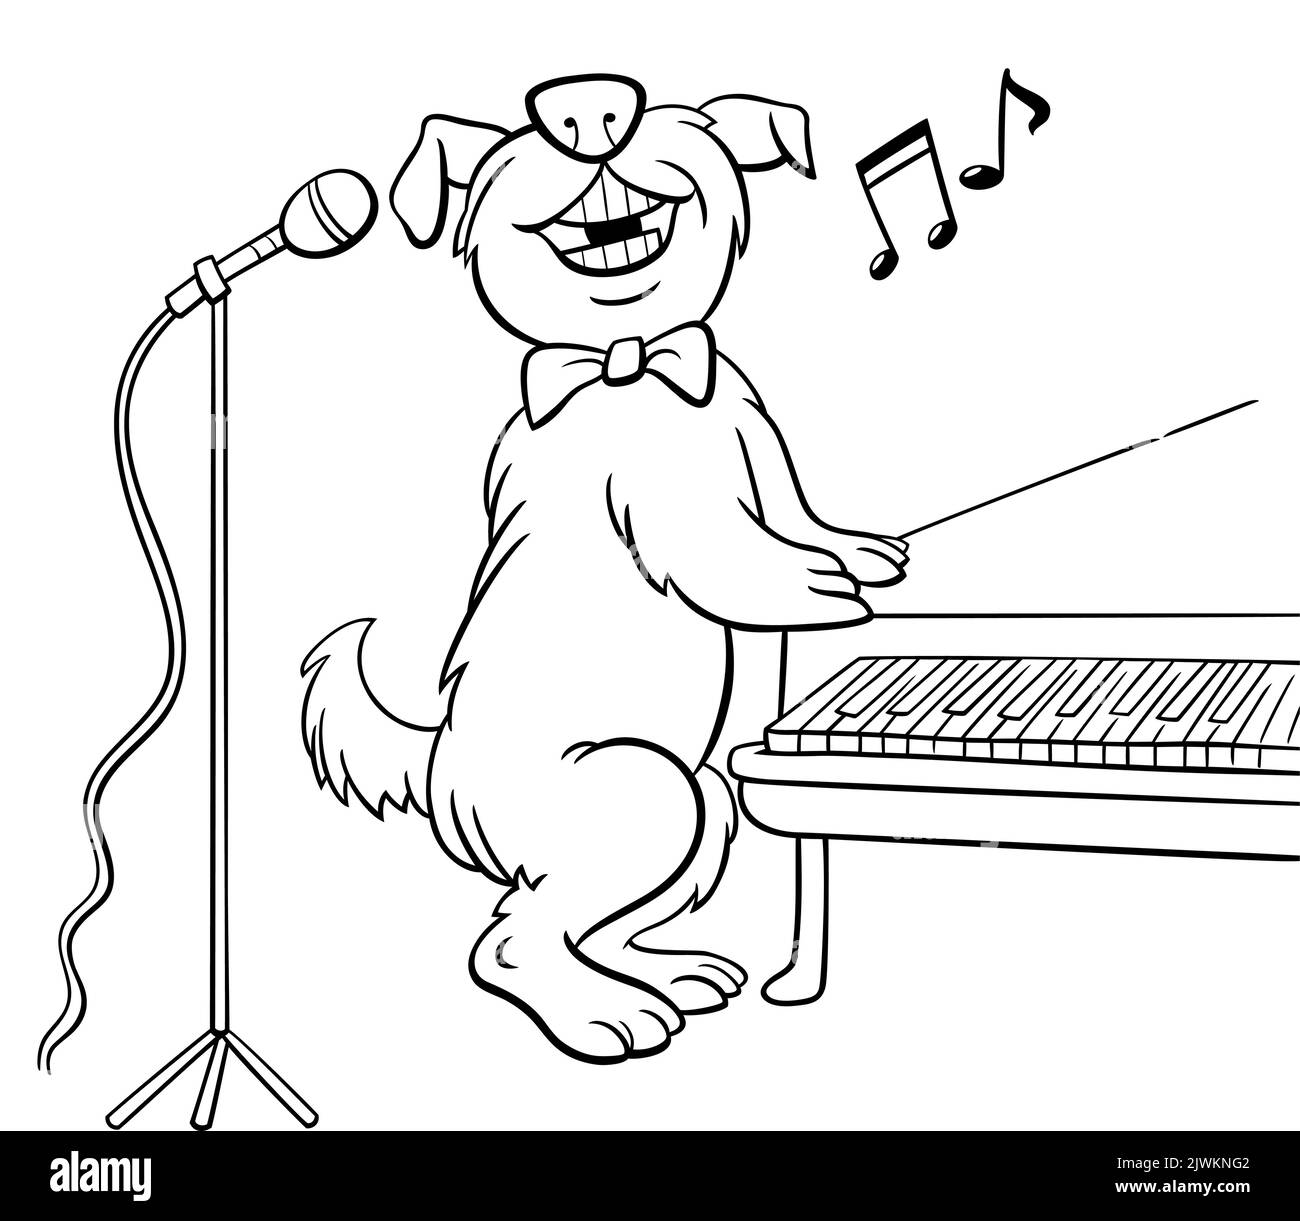 Dessin animé noir et blanc de drôle de chien personnage animal chantant à la page de coloriage de piano Illustration de Vecteur